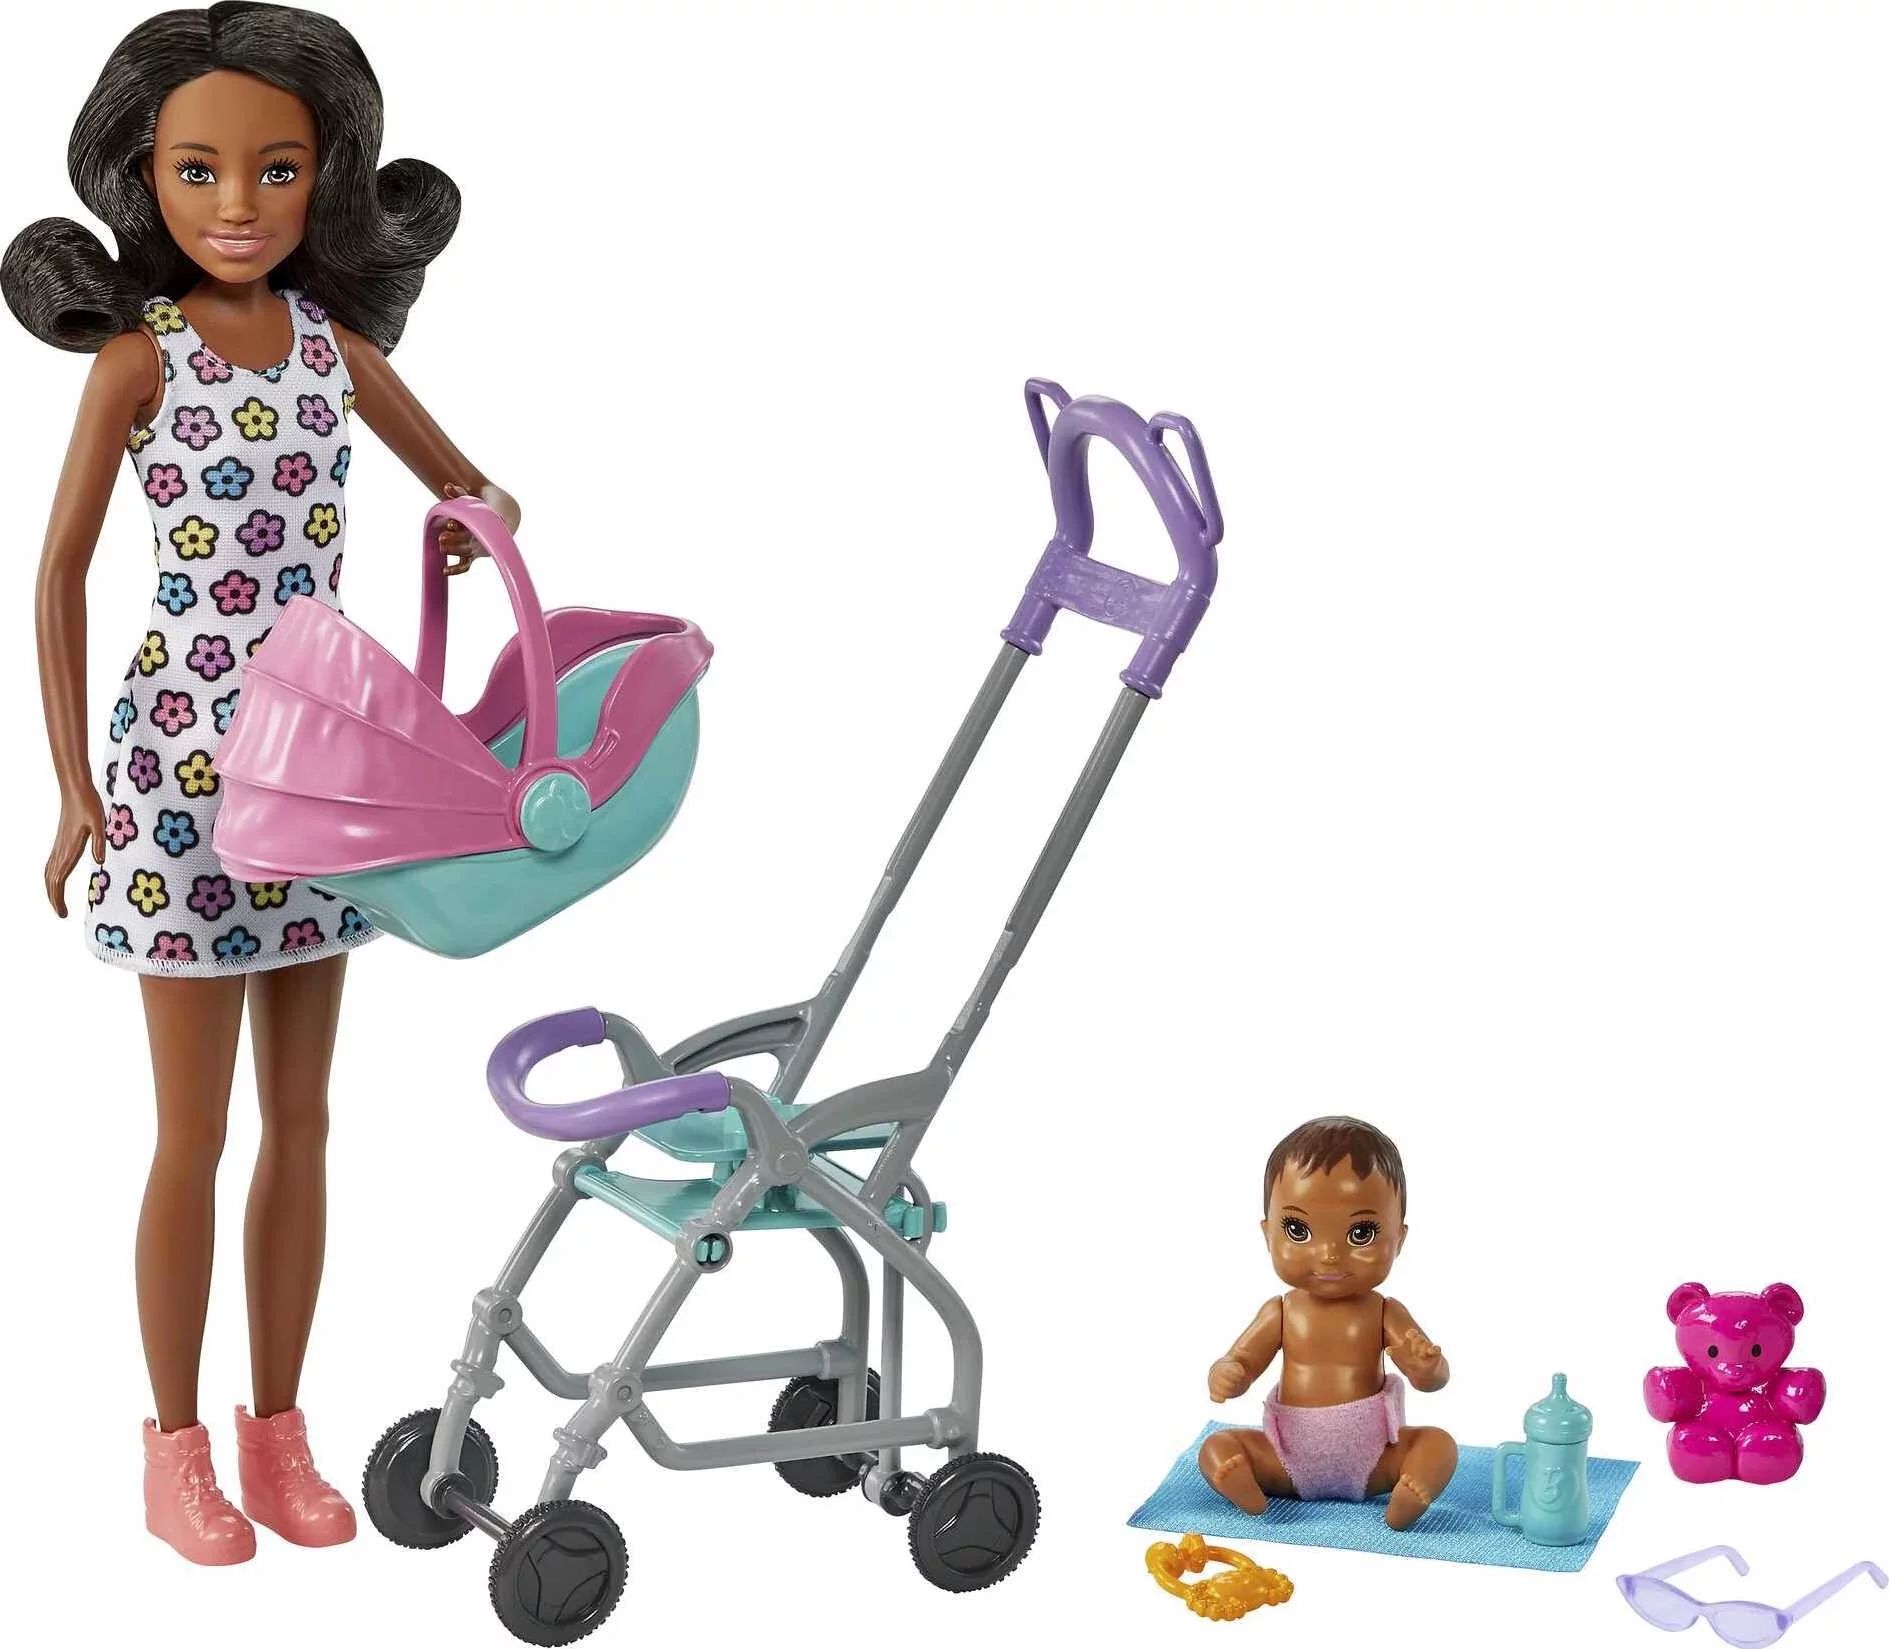 Barbie Skipper Babysitters Inc. Stroller Playset with Babysitter & Baby Dolls, Plus 5 Accessories... | Walmart (US)